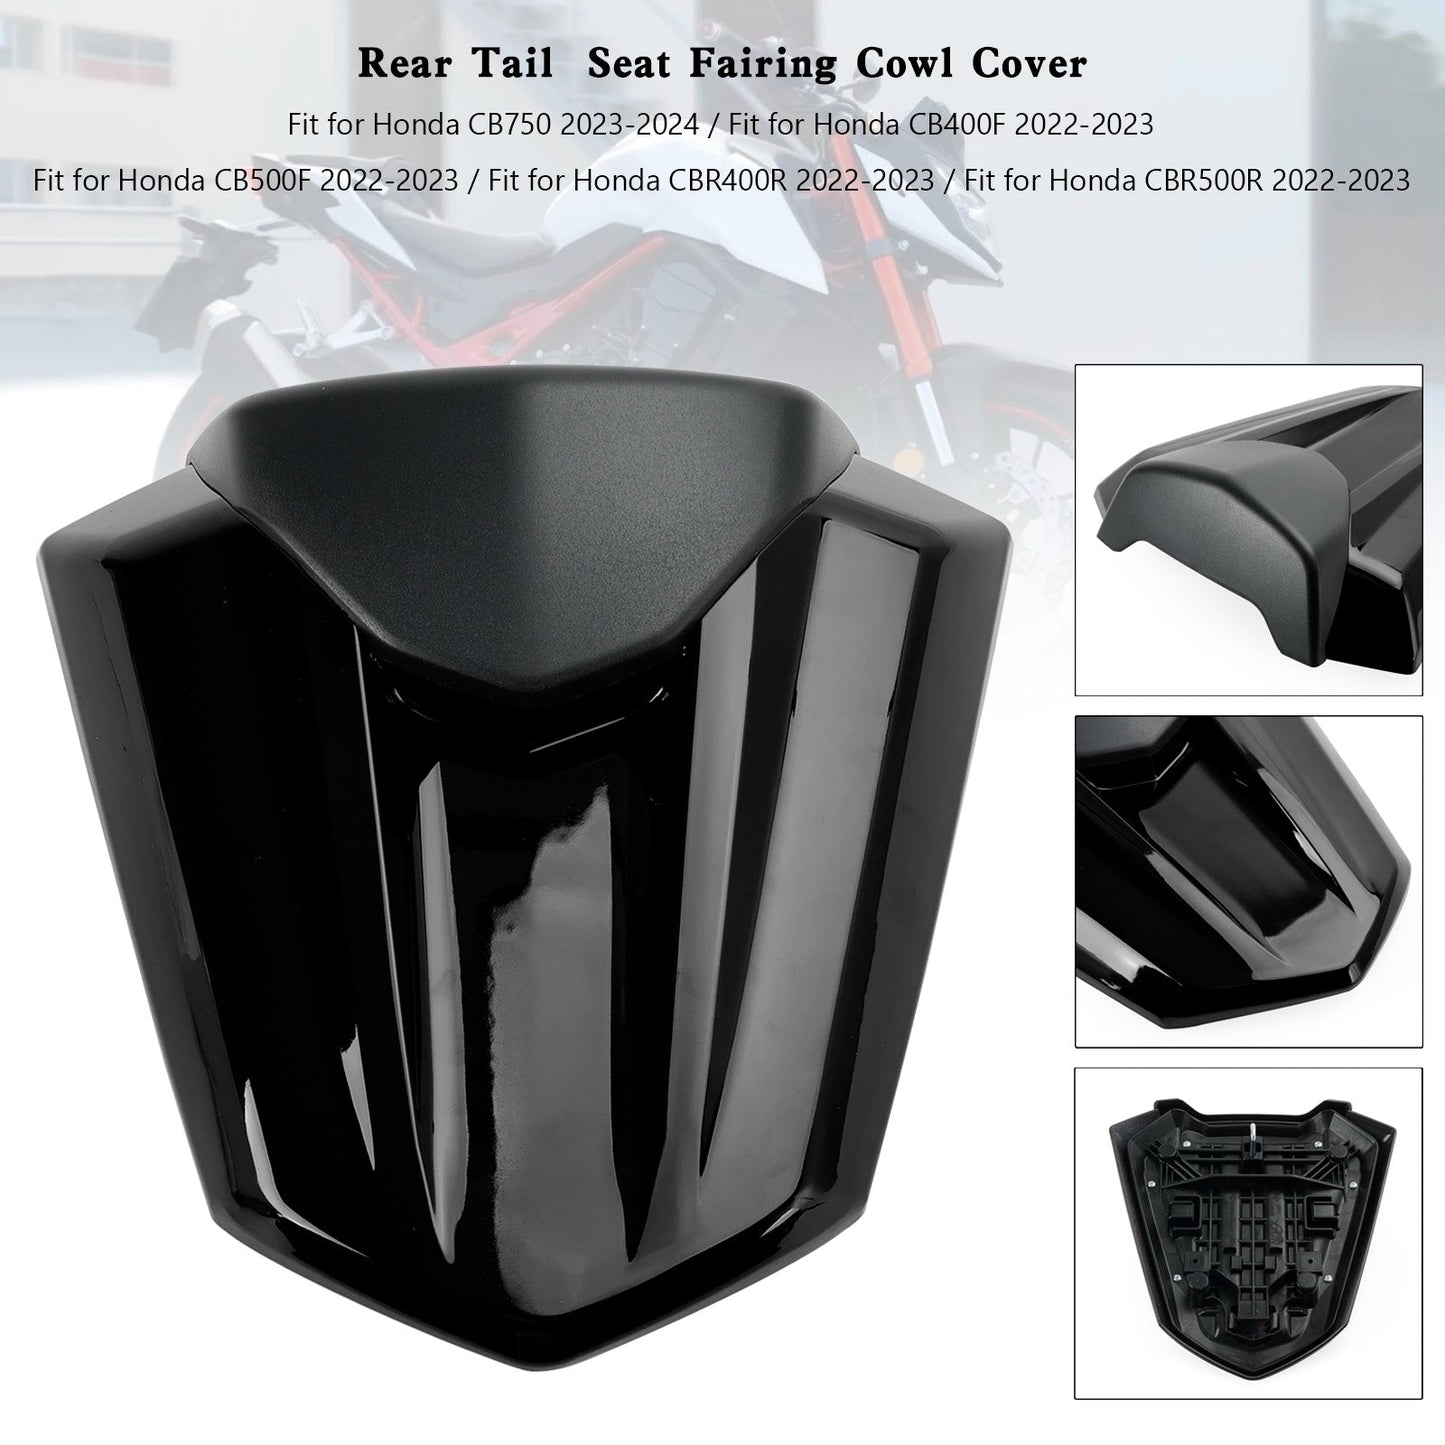 Copertura della carenatura del sedile posteriore Honda CB500F 2022-2023